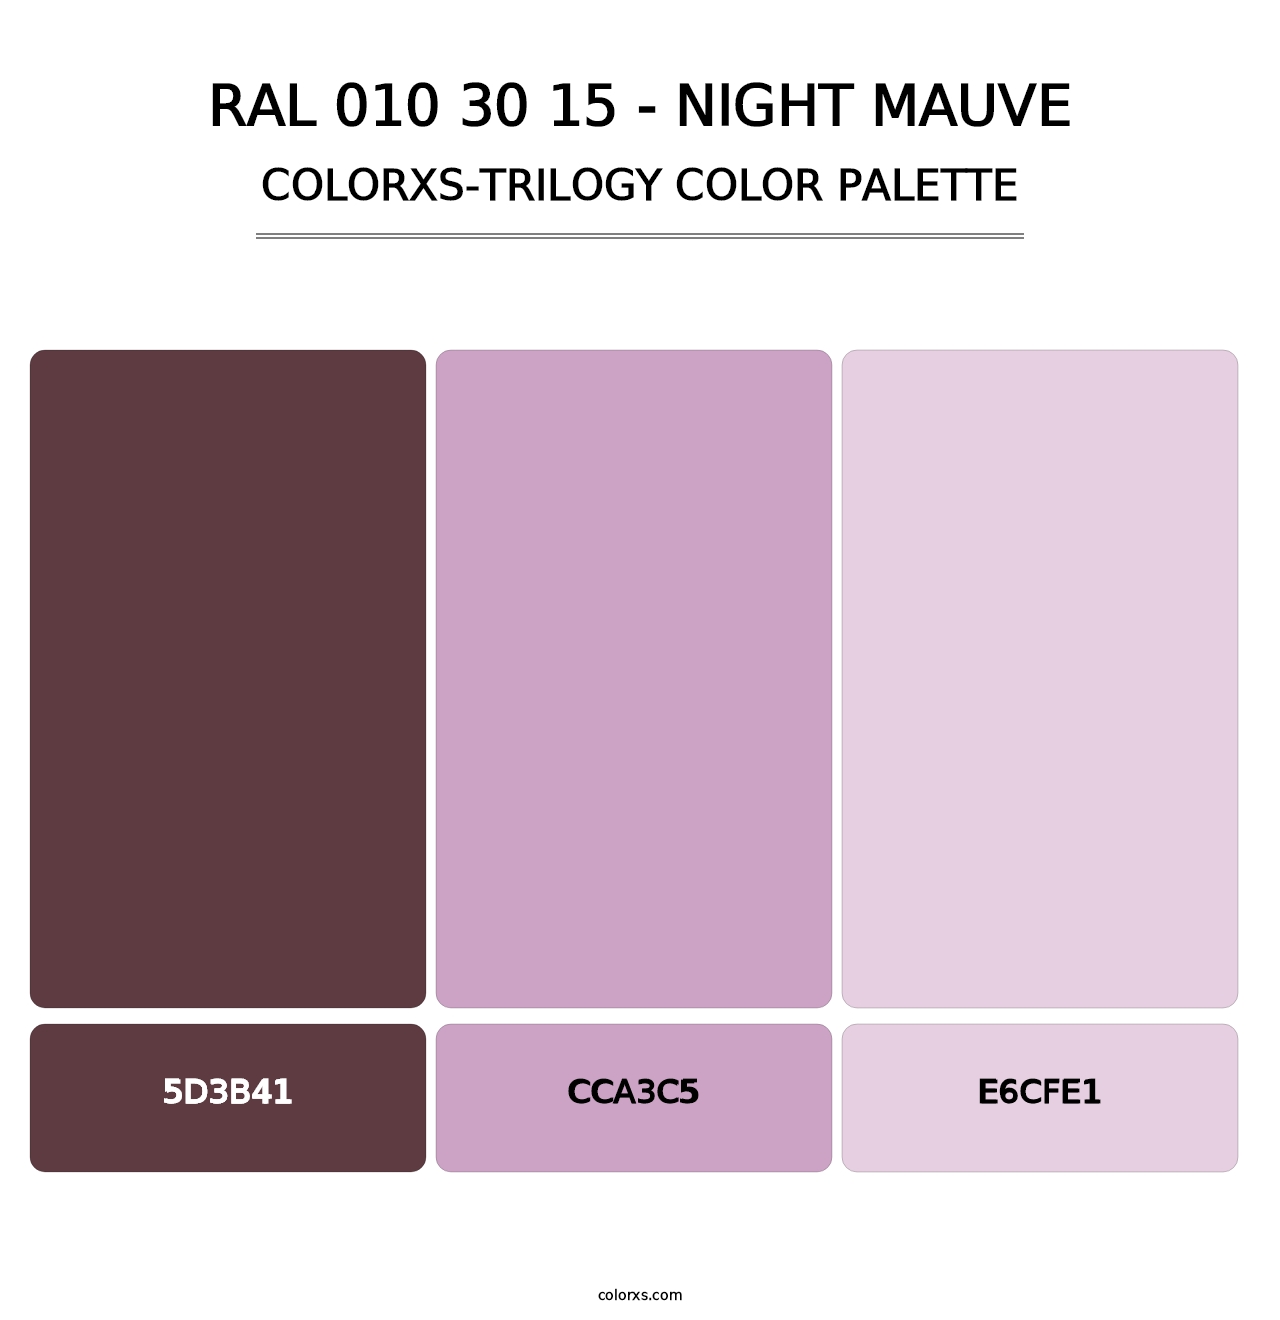 RAL 010 30 15 - Night Mauve - Colorxs Trilogy Palette